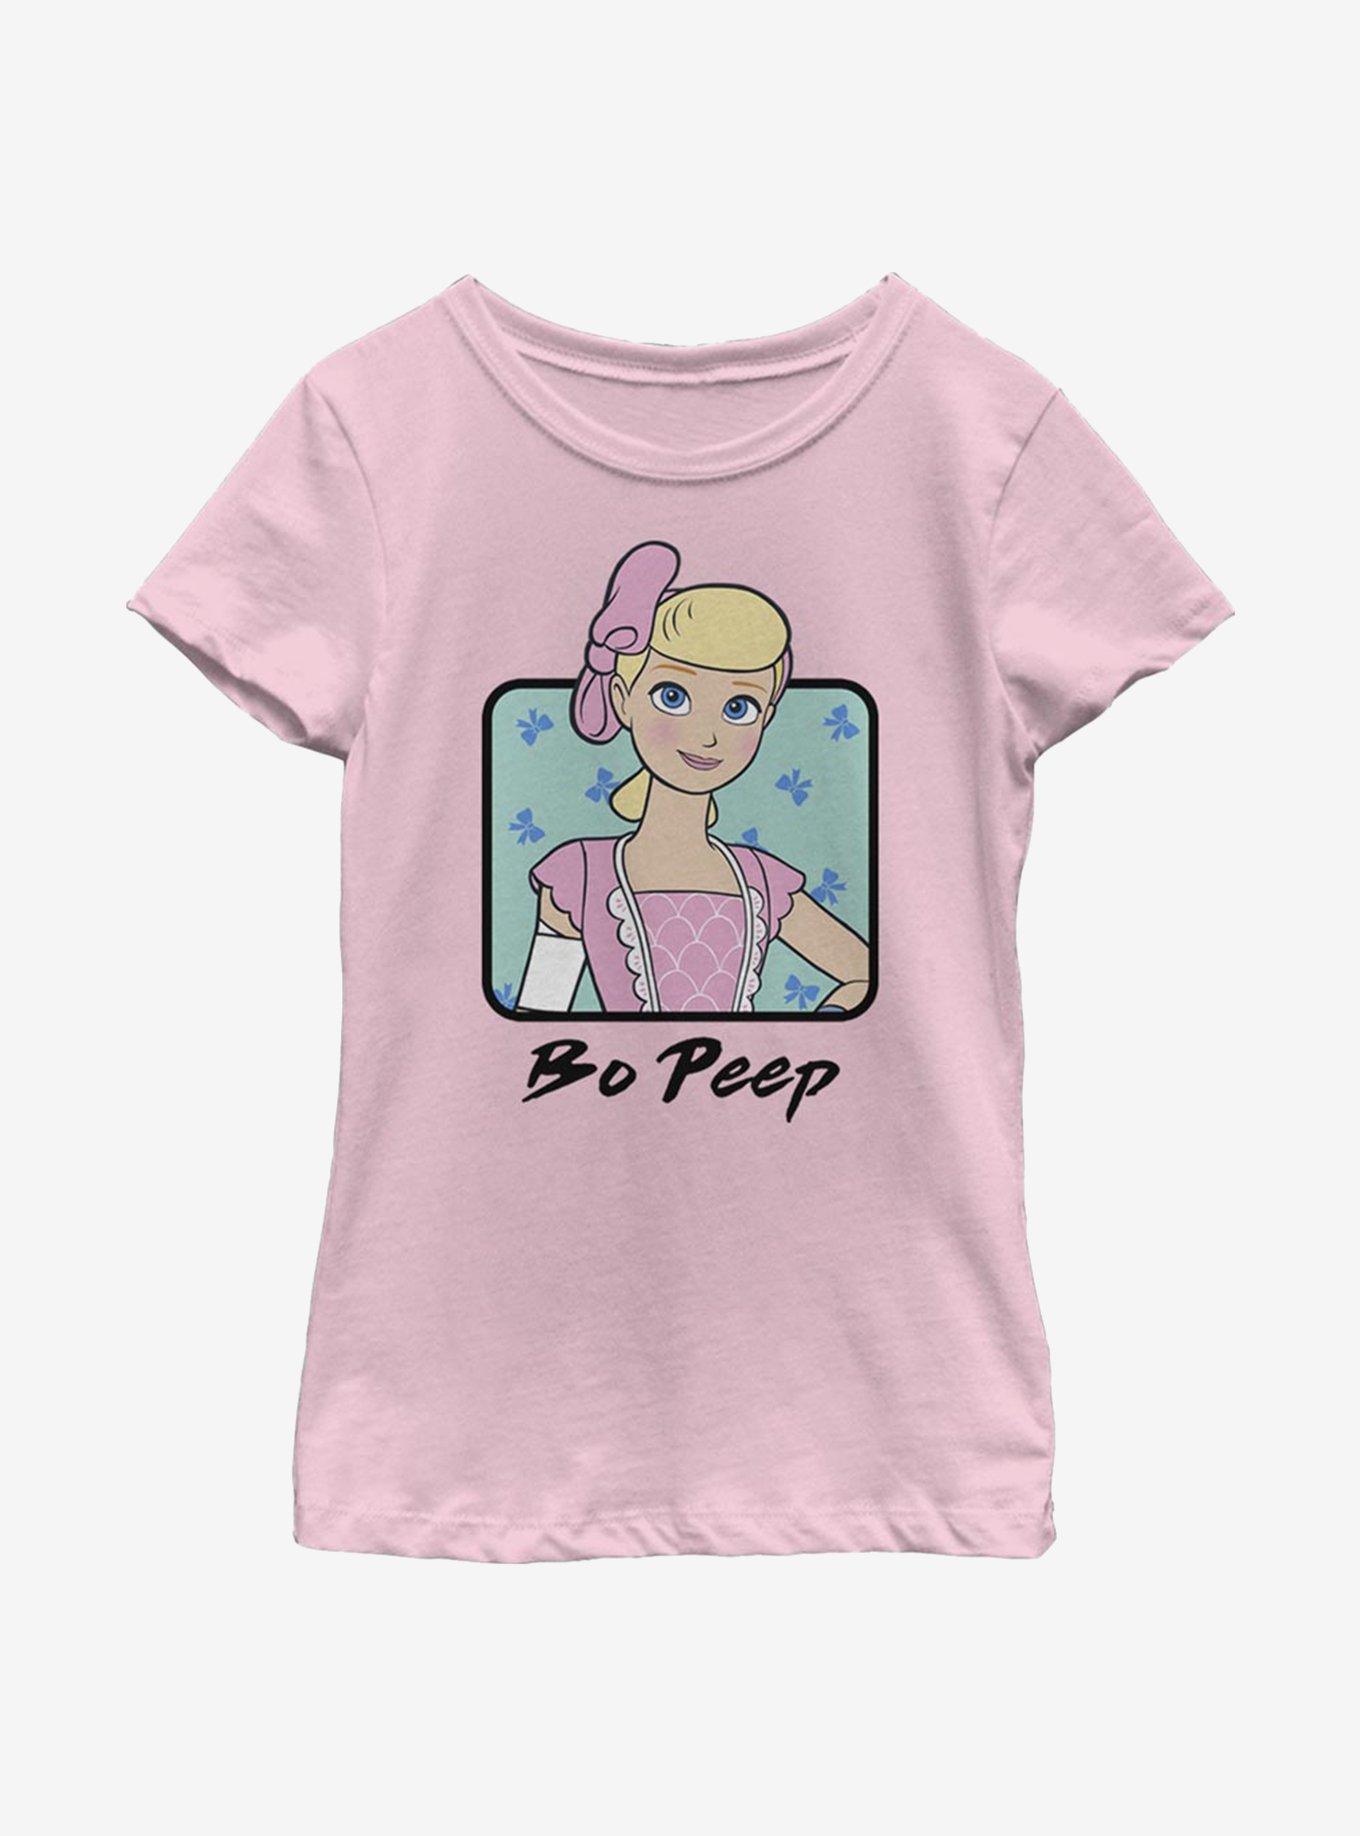 Disney Pixar Toy Story 4 Bo Peep Square Youth Girls T-Shirt, PINK, hi-res